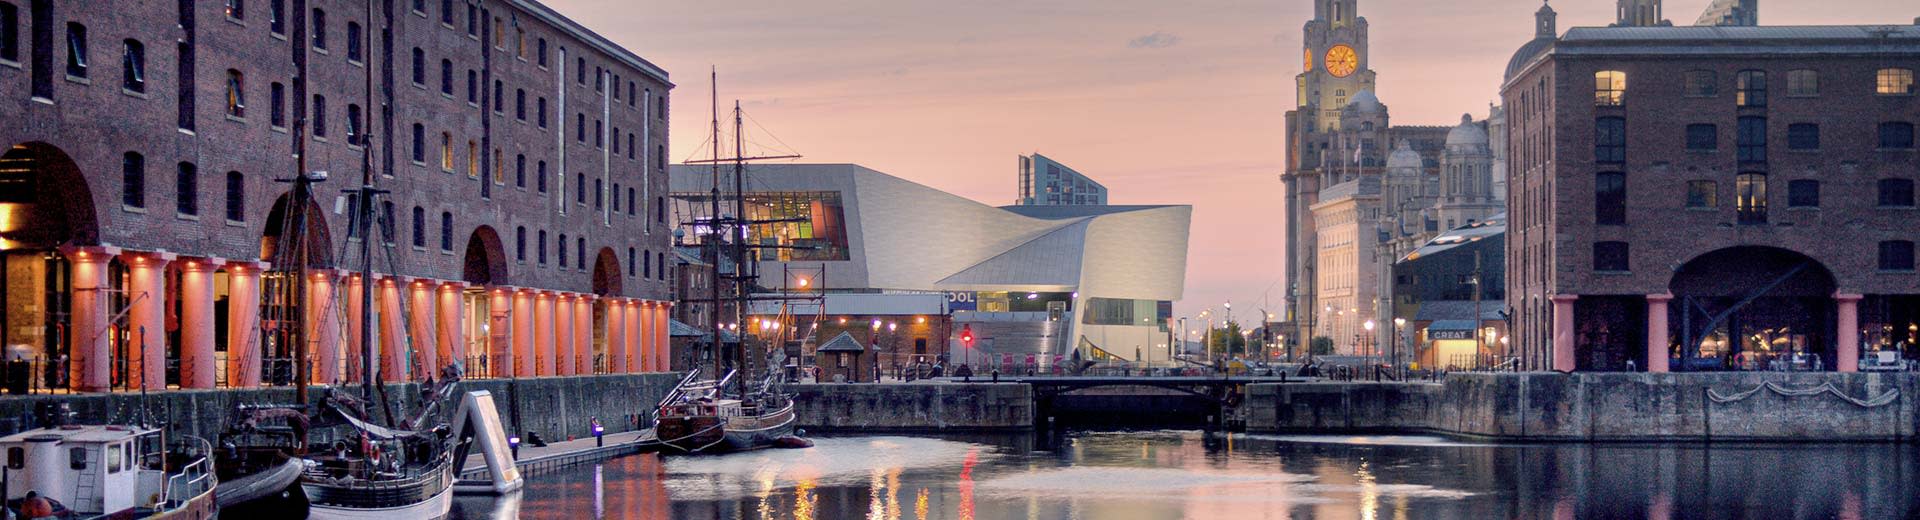 Los edificios modernos de Liverpool a orillas del río Mersey.